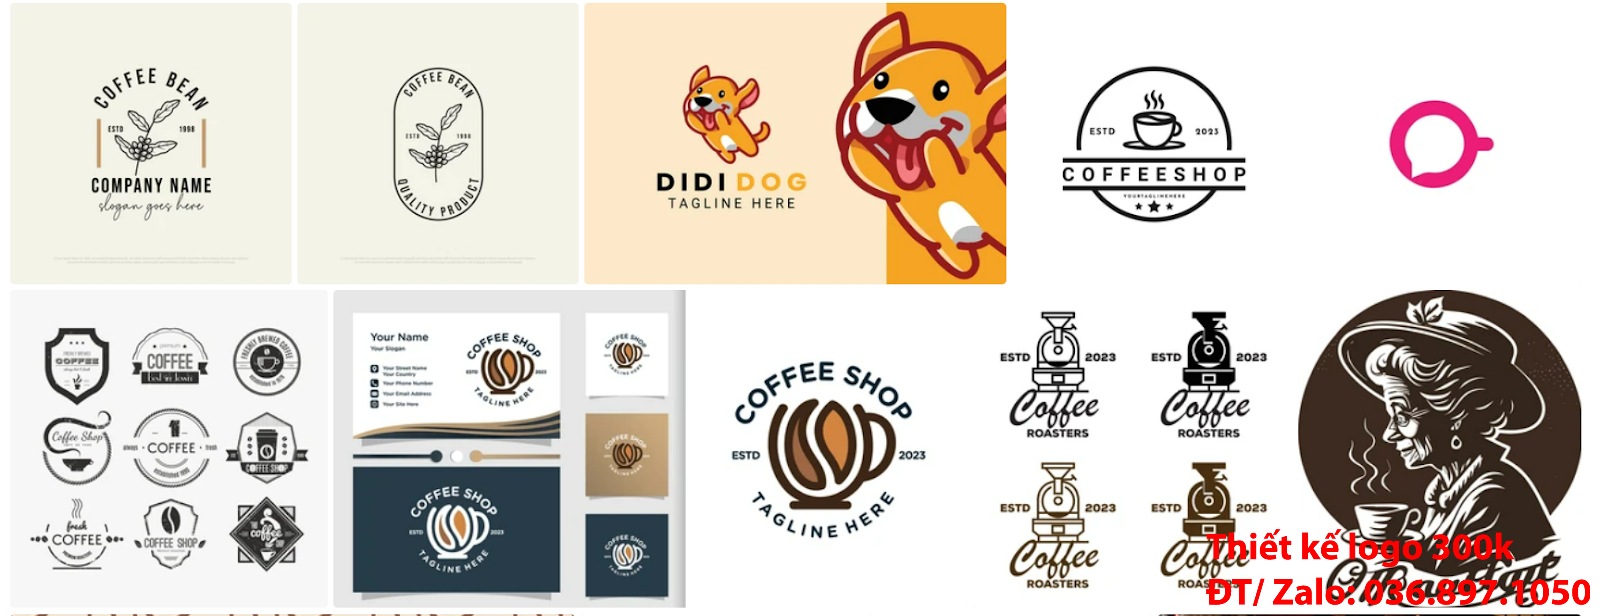 Dịch vụ cung cấp mẫu thiết kế logo cà phê cafe coffee chuyên nghiệp online tại TpHCM